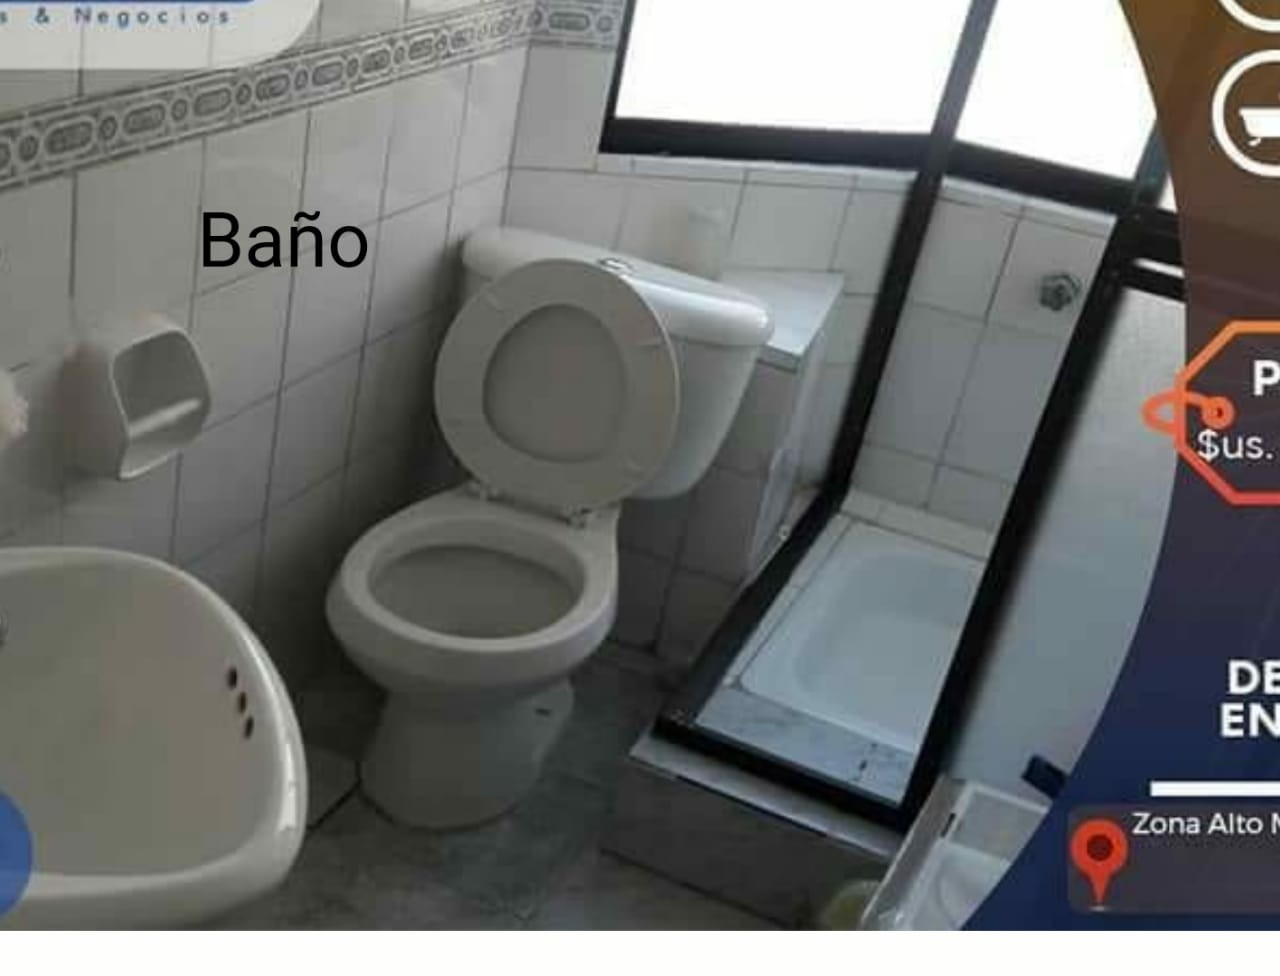 Departamento en Miraflores en La Paz 2 dormitorios 1 baños  Foto 2